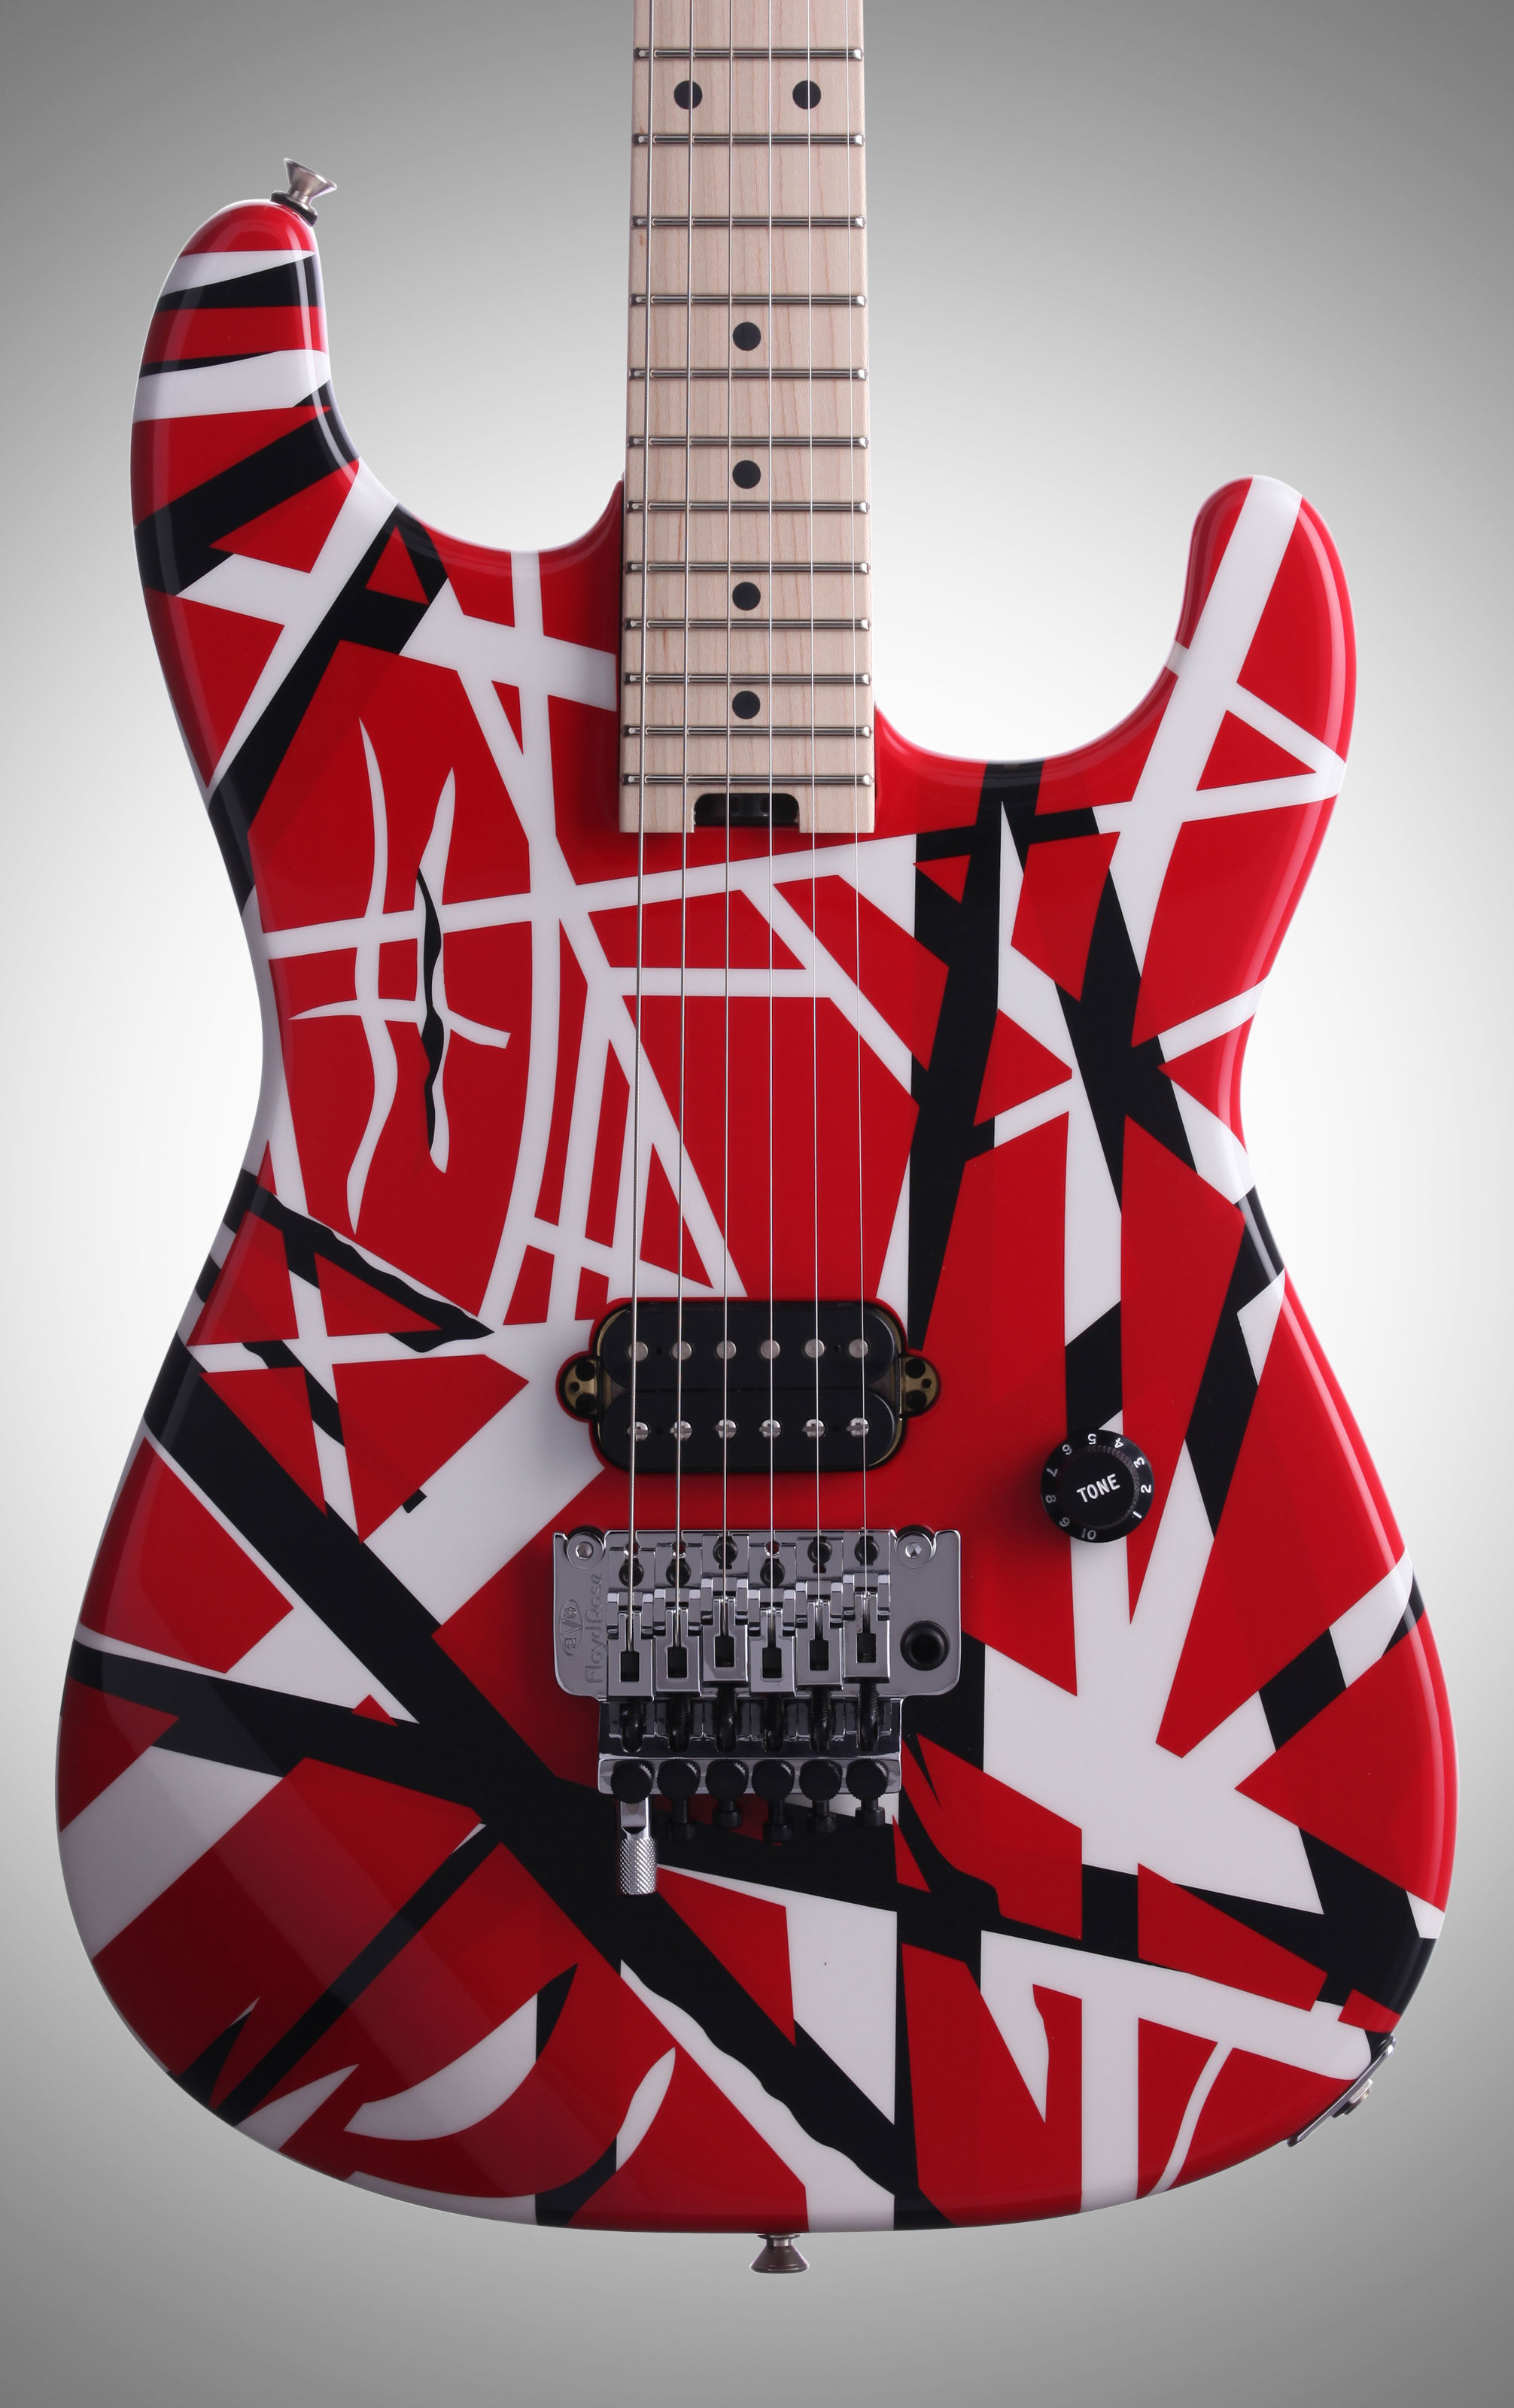 EVH Eddie Van Halen Striped Series Electric Guitar, Red, Black, and White